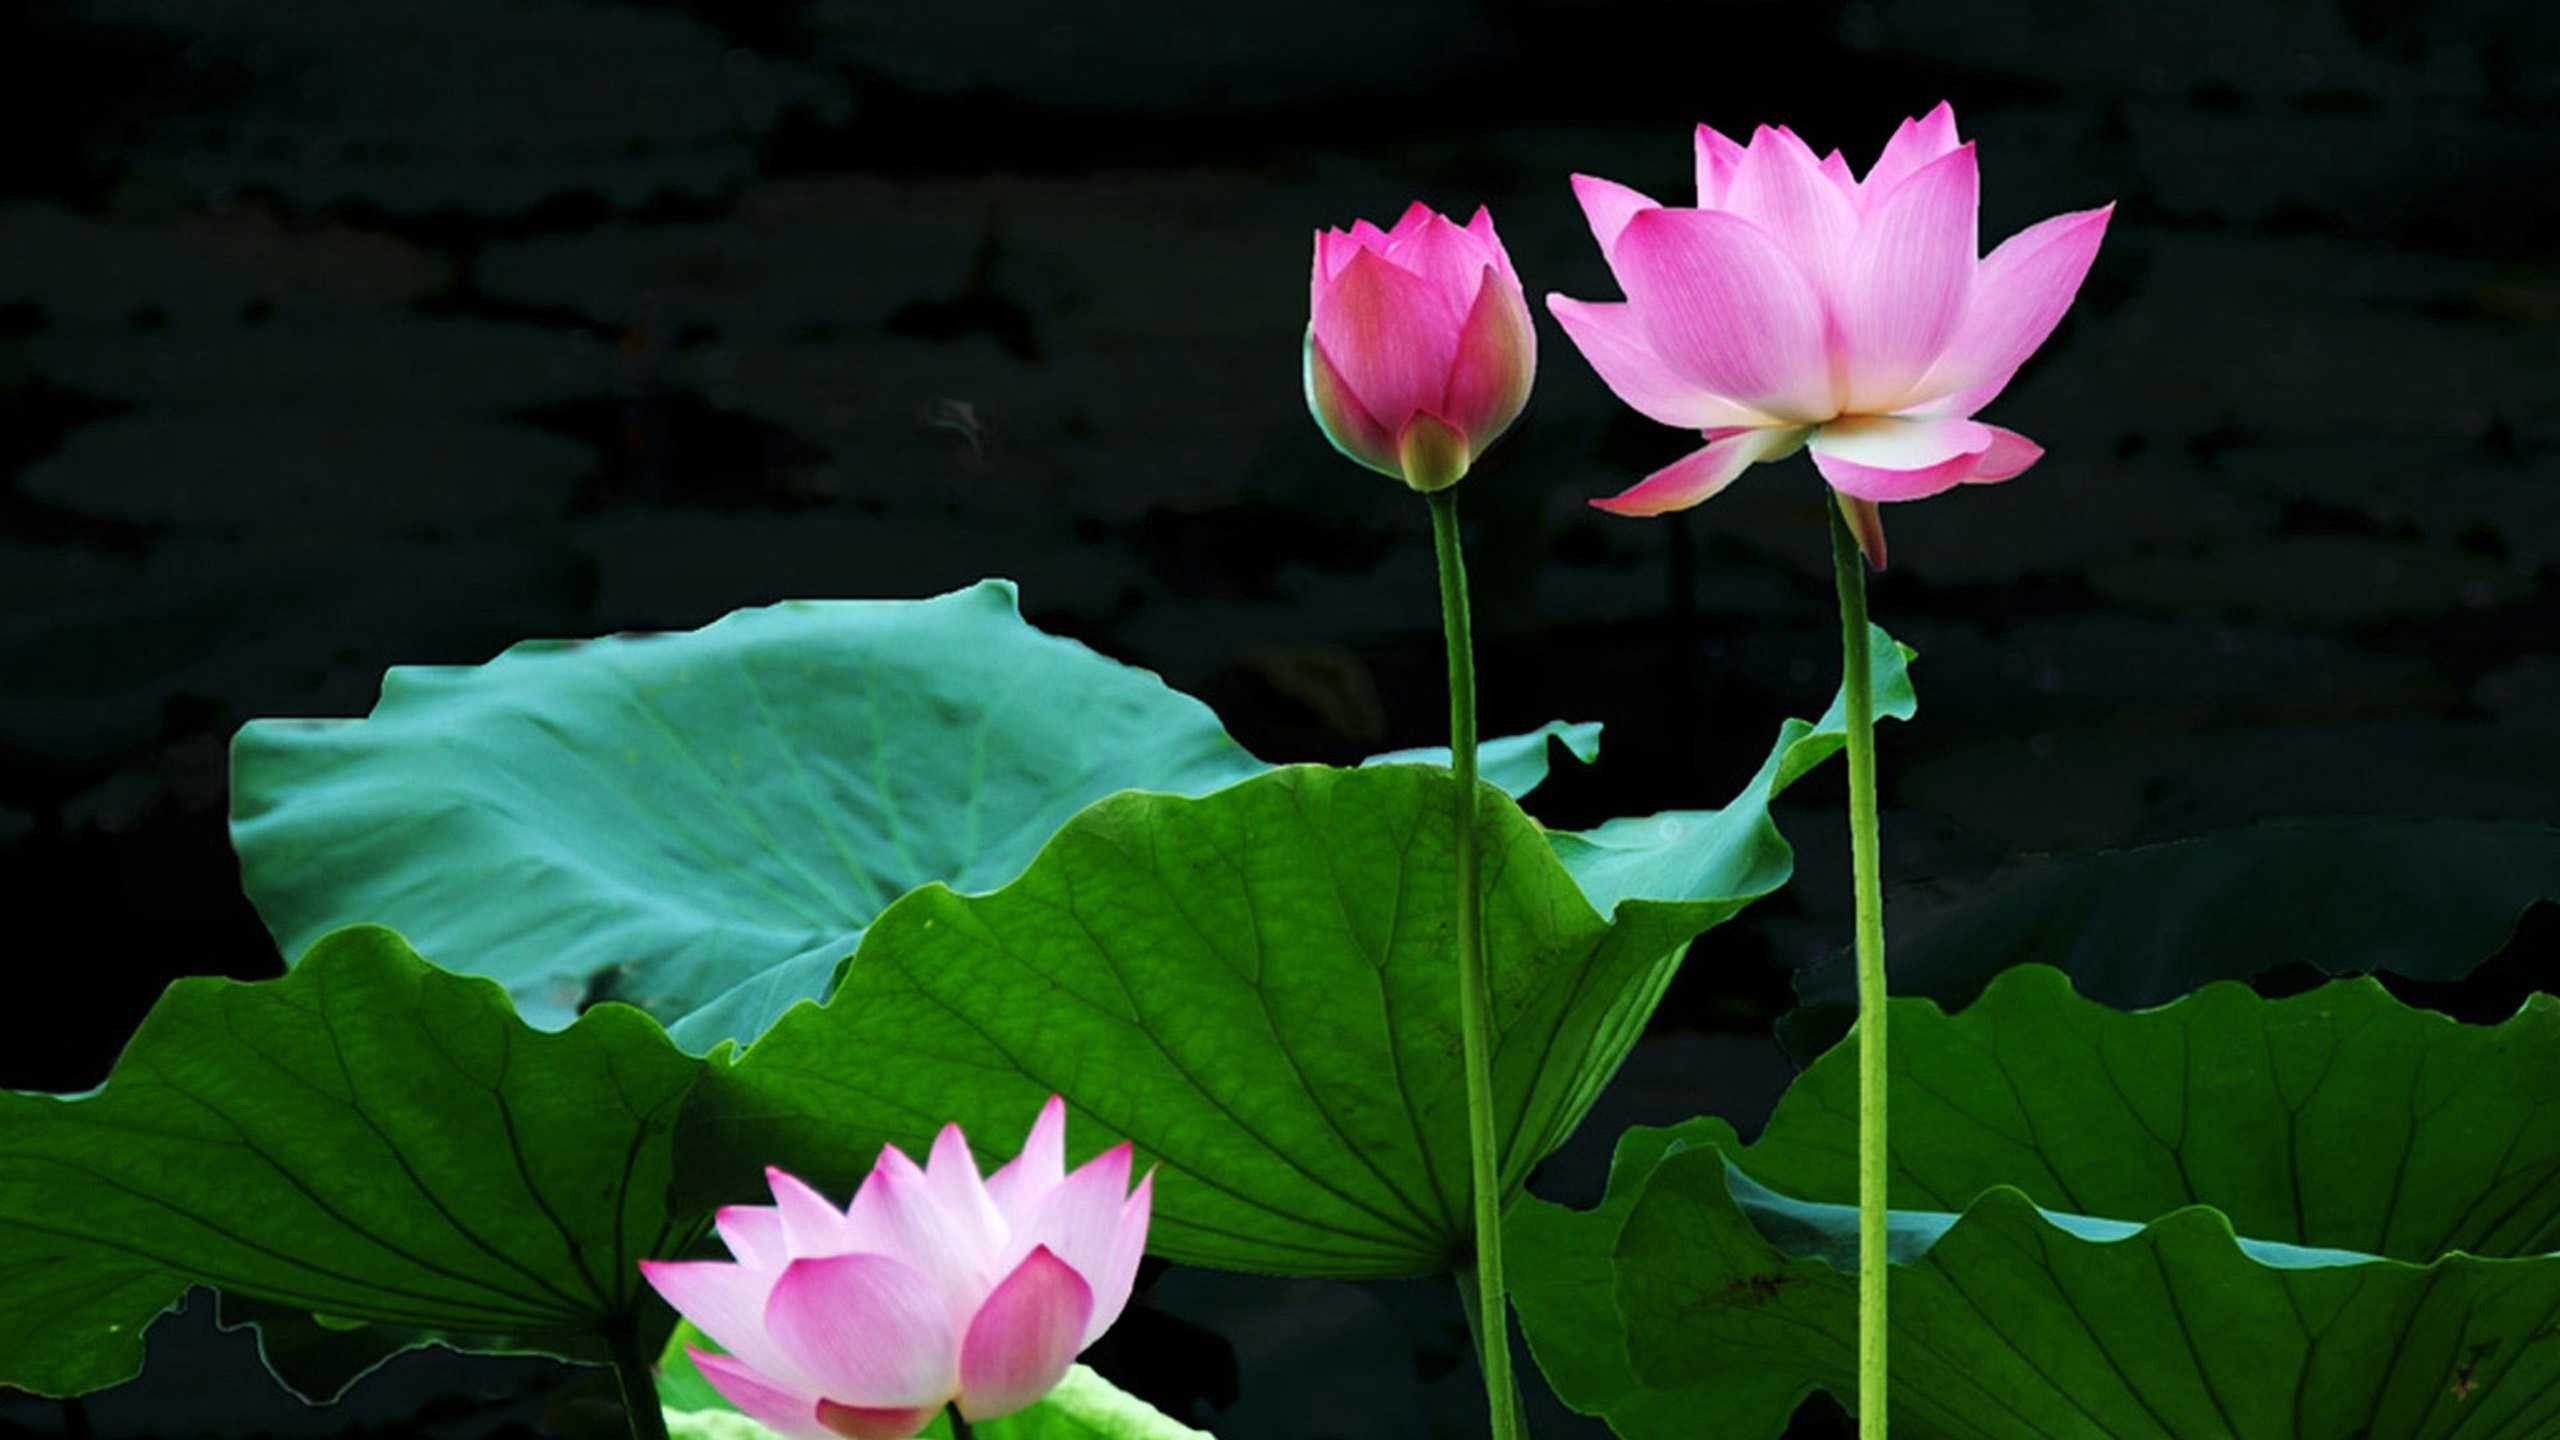 OnePlus 10T Wallpaper with Lotus Flower Background - Allpicts | Lotus  flower images, Lotus flower pictures, Lotus flower wallpaper